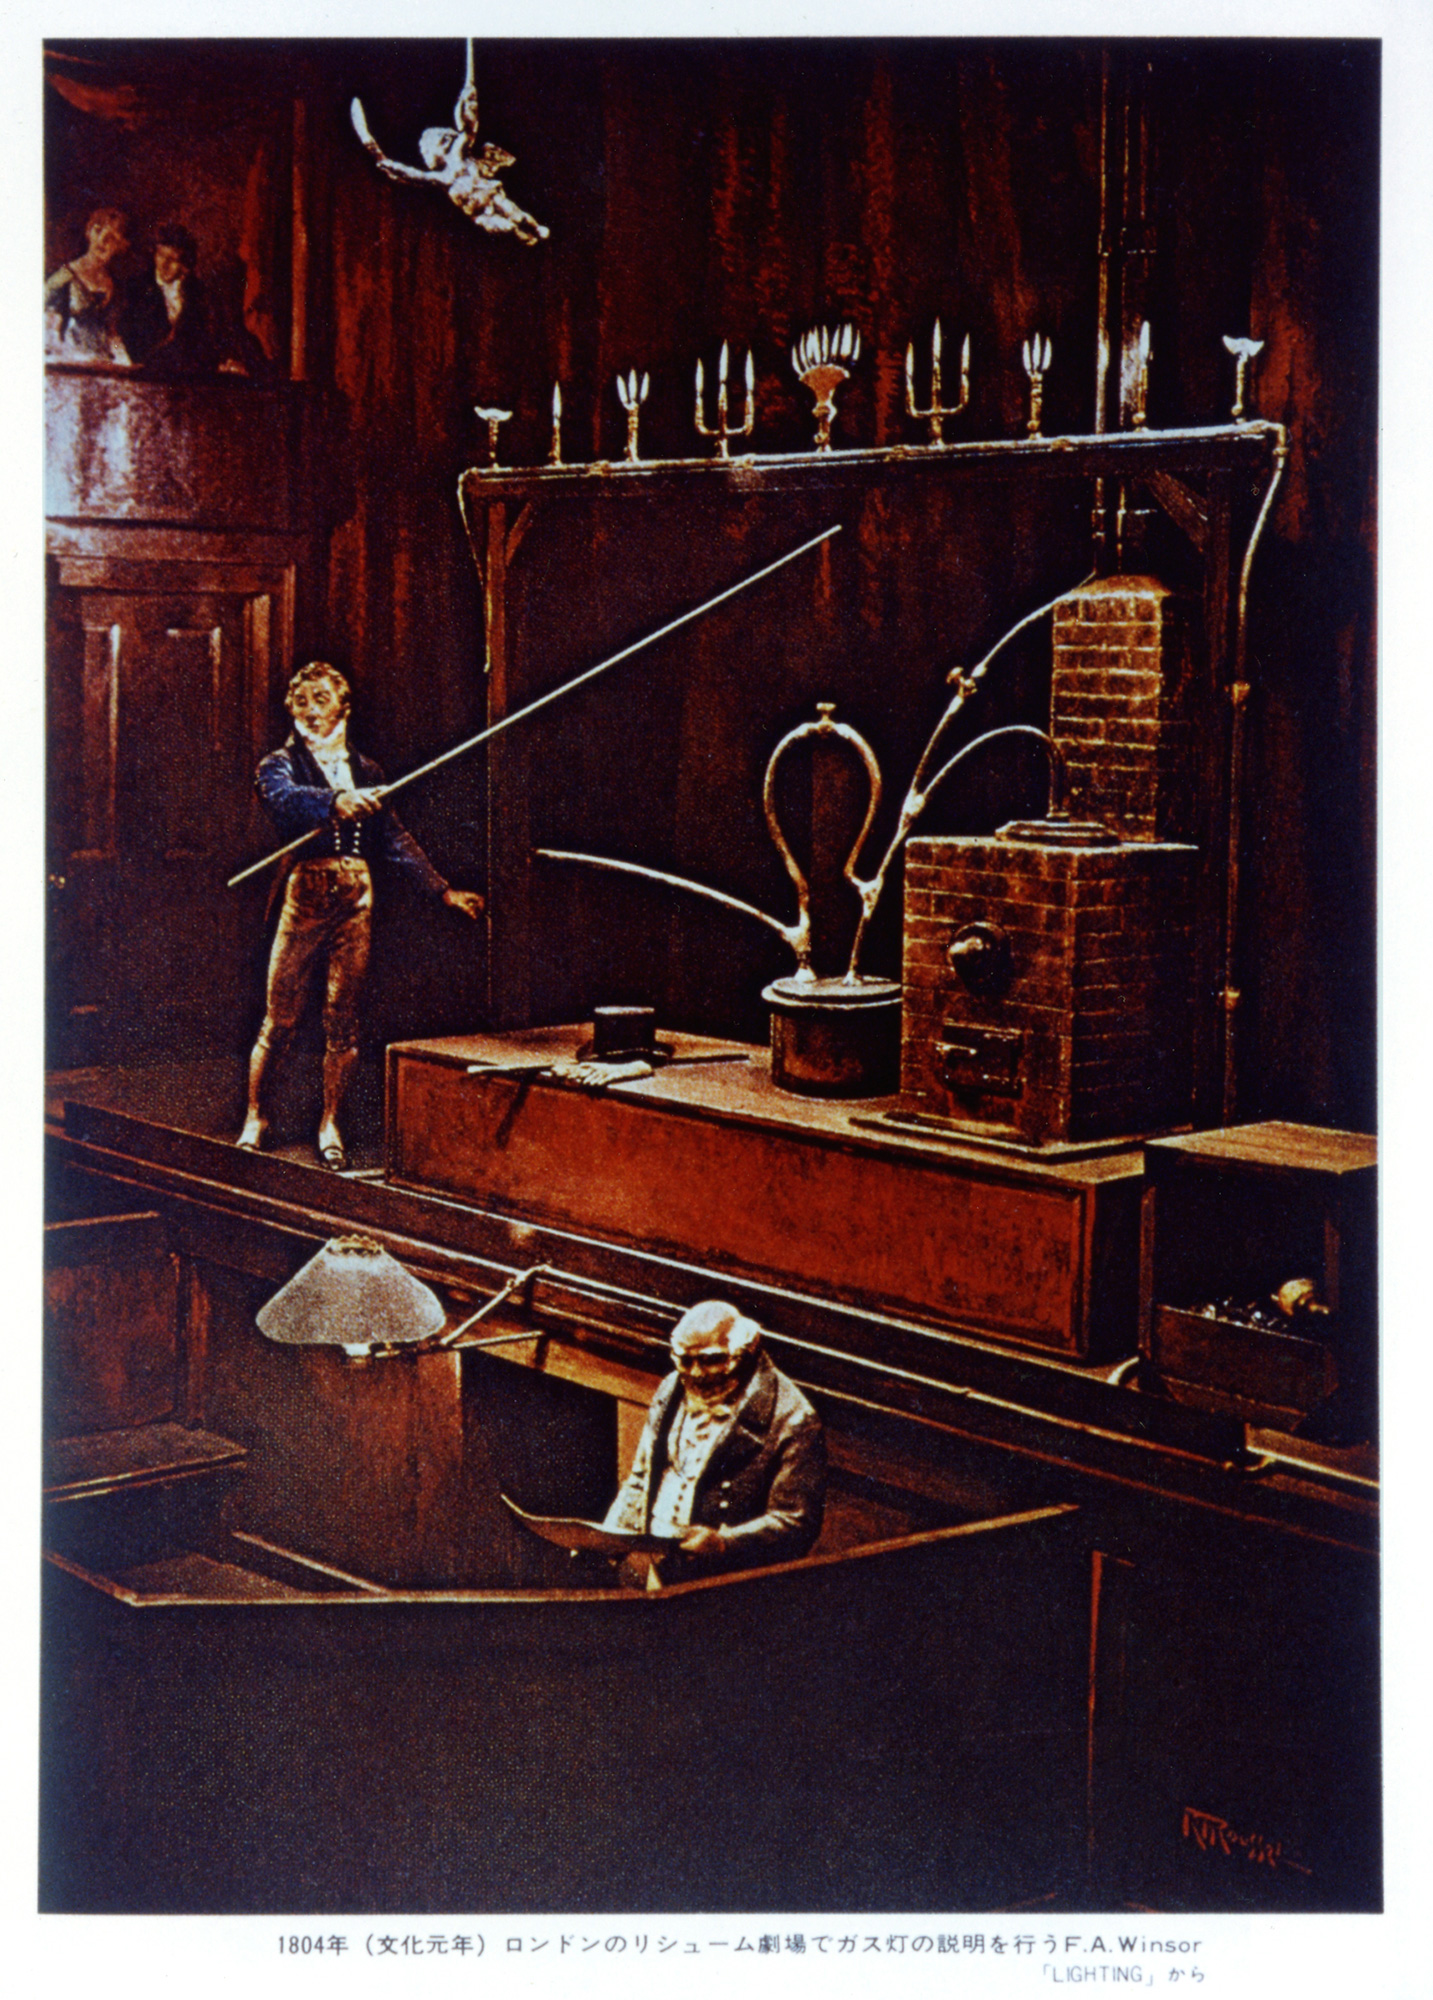 イラスト「ロンドンの劇場でのウィンザーによる実験風景」